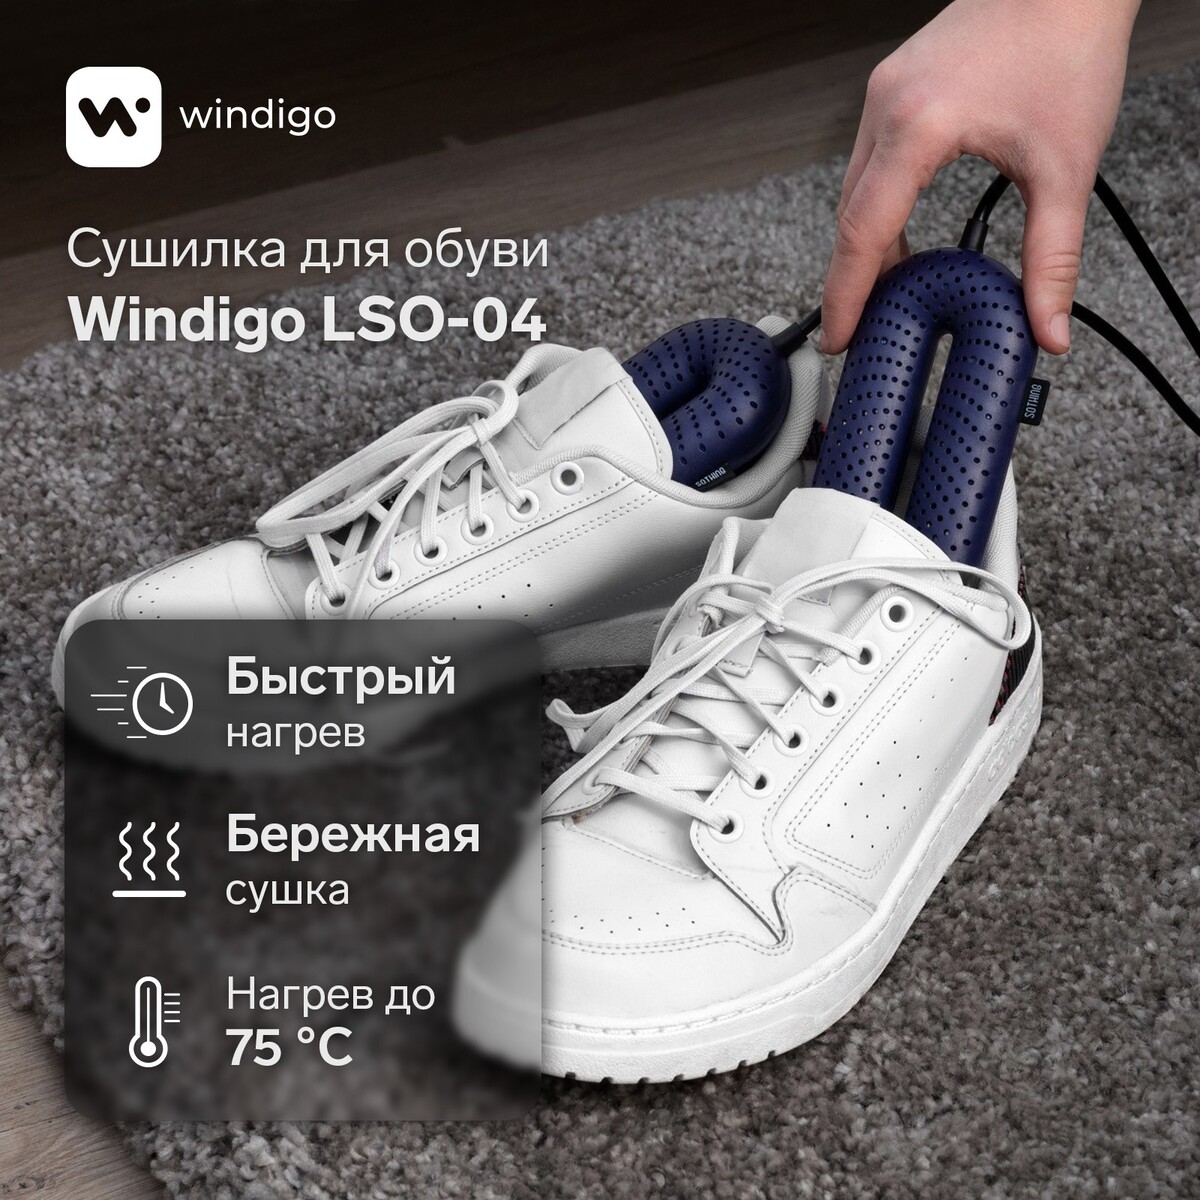 фото Сушилка для обуви windigo lso-04, 17 см, 20 вт, индикатор, синяя